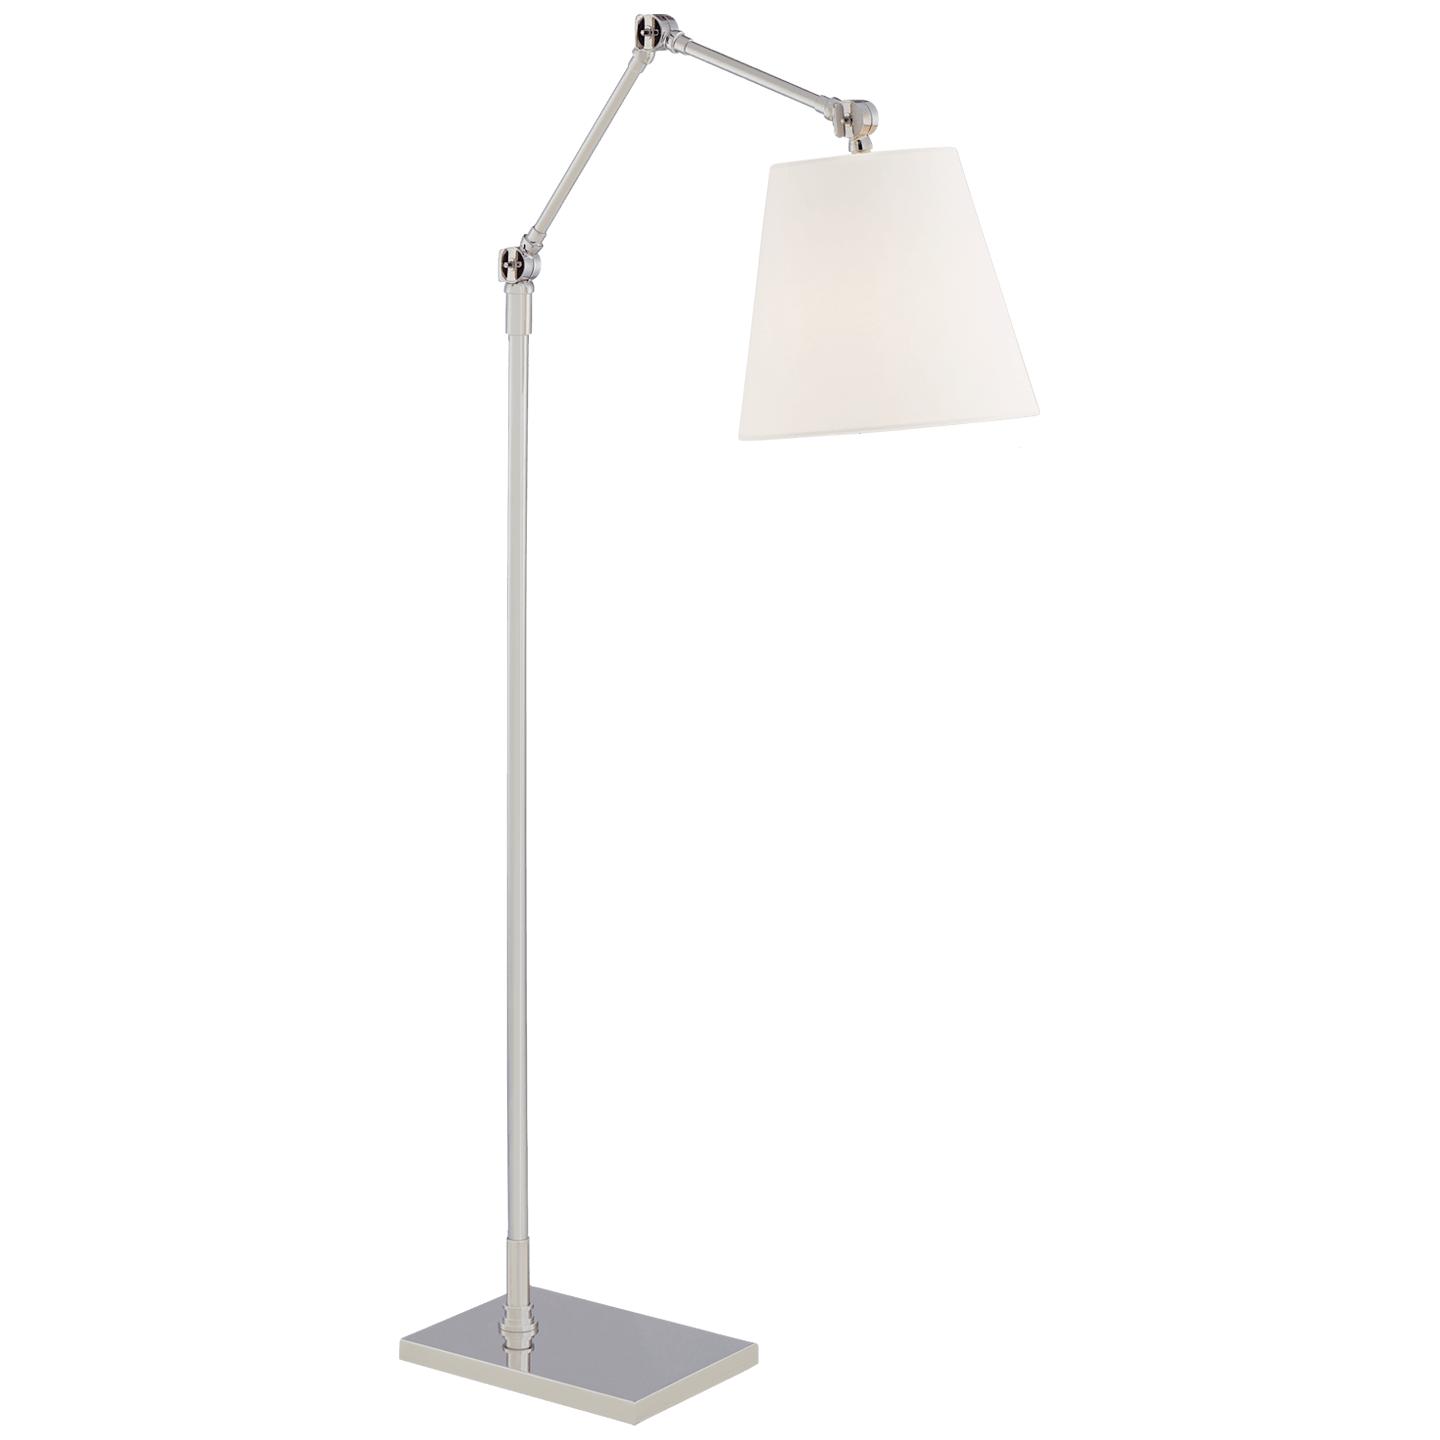 Купить Торшер Graves Articulating Floor Lamp в интернет-магазине roooms.ru